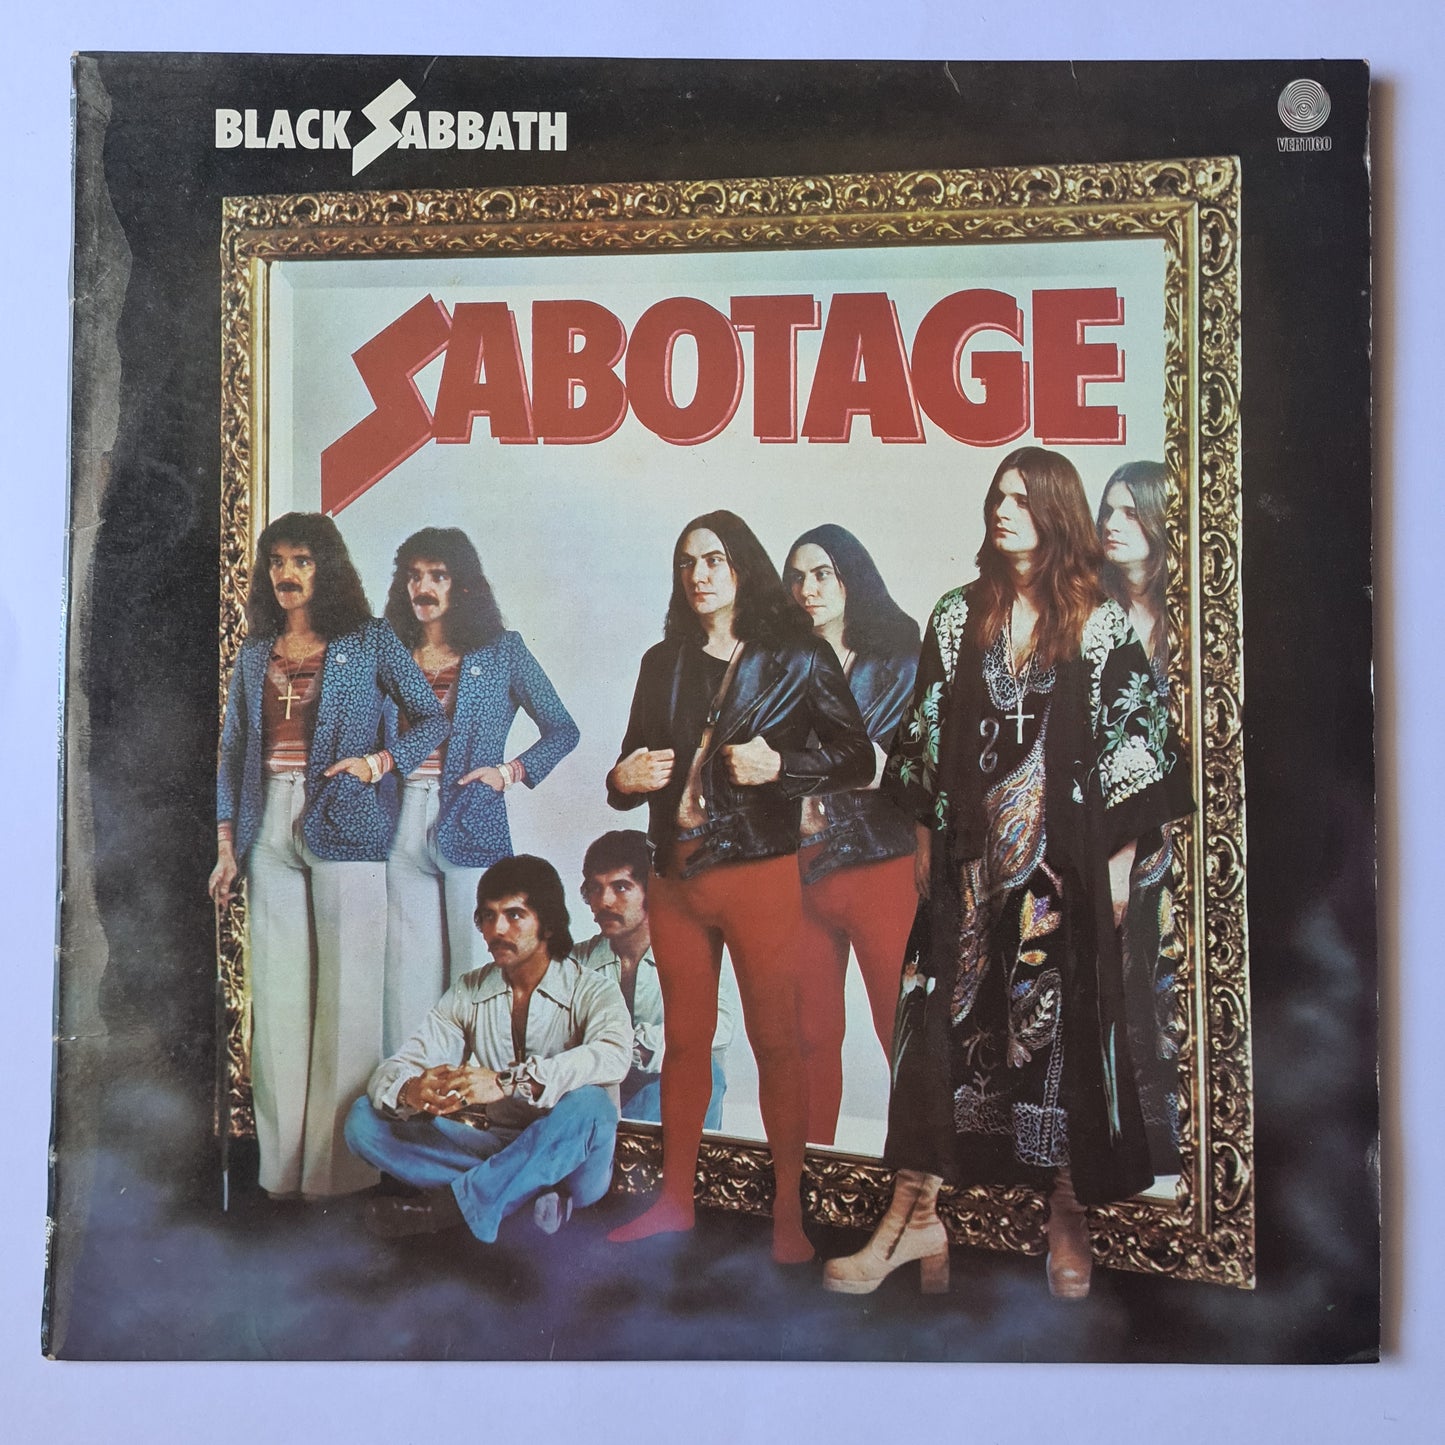 Black Sabbath – Sabotage- 1975 - Vinyl Record